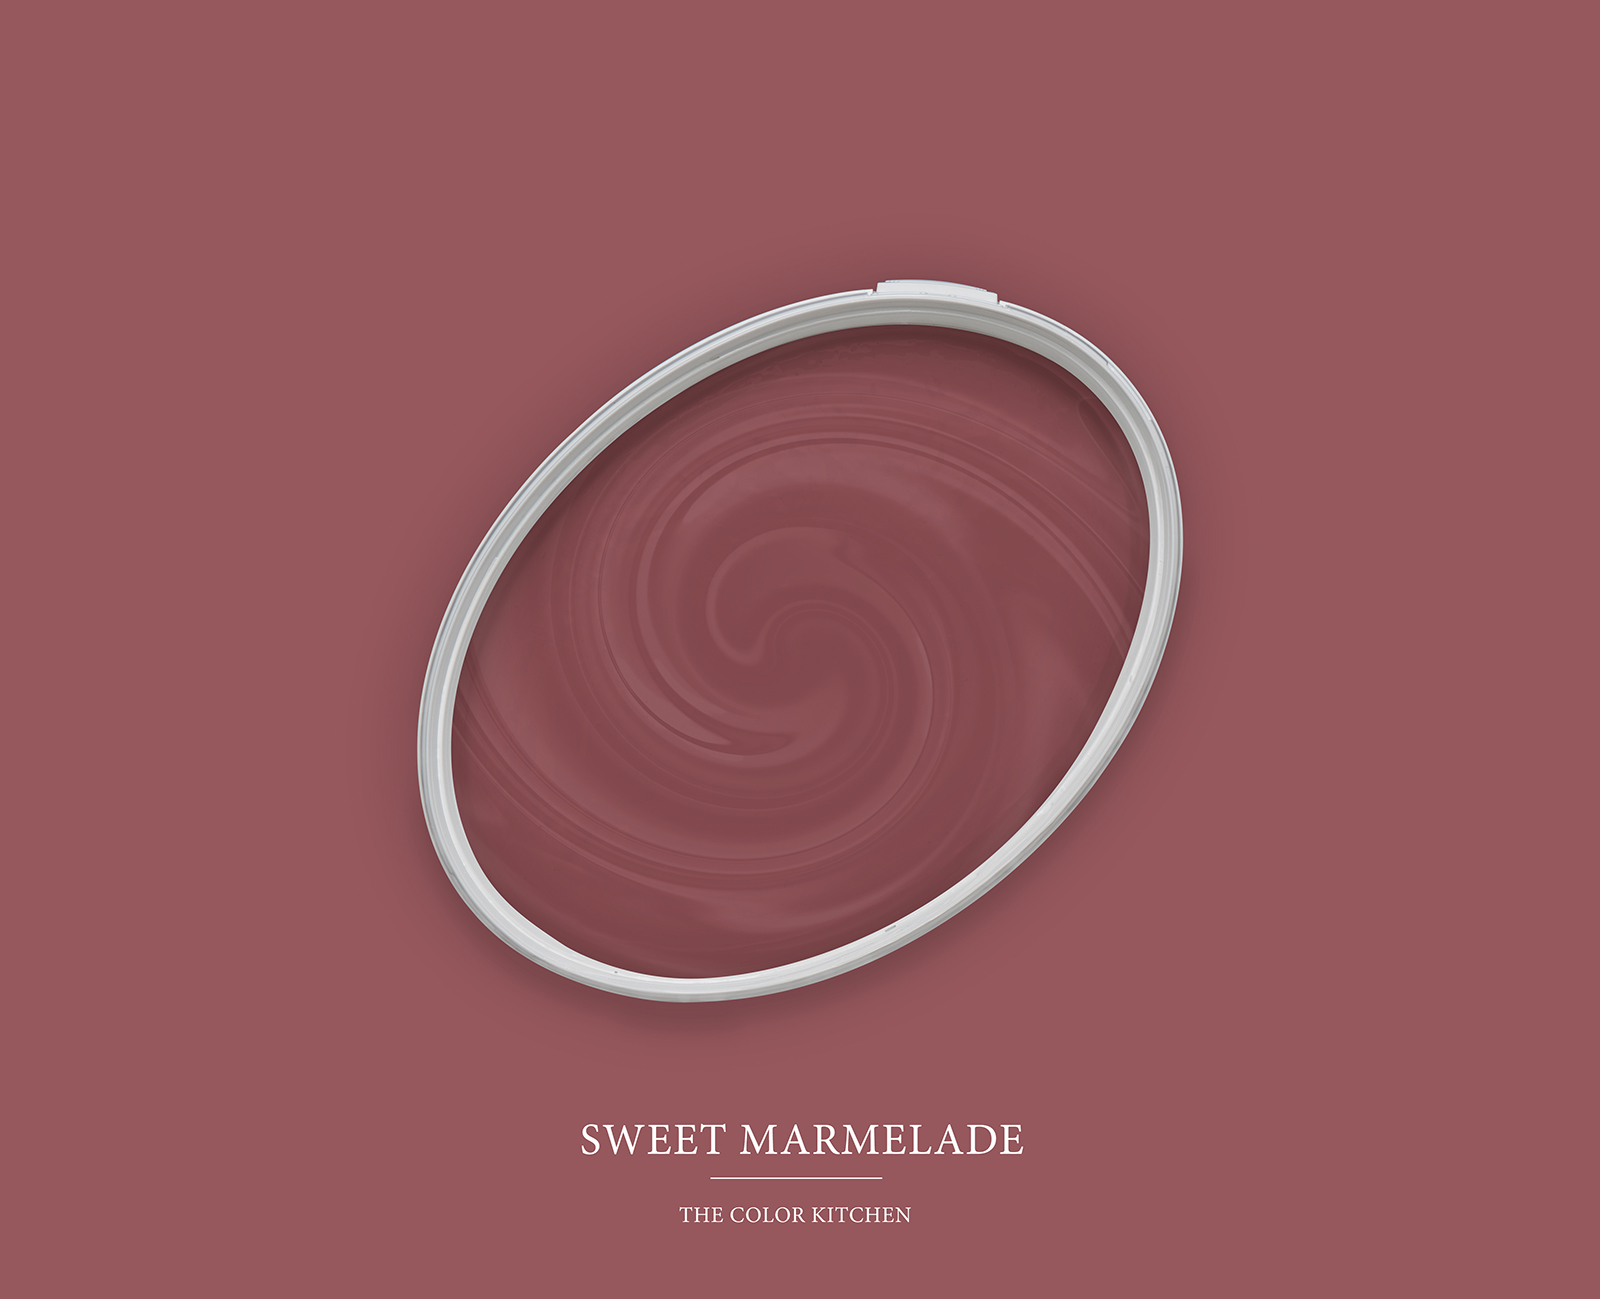 Muurverf TCK7012 »Sweet Marmelade« in authentieke bessentint – 5,0 liter
